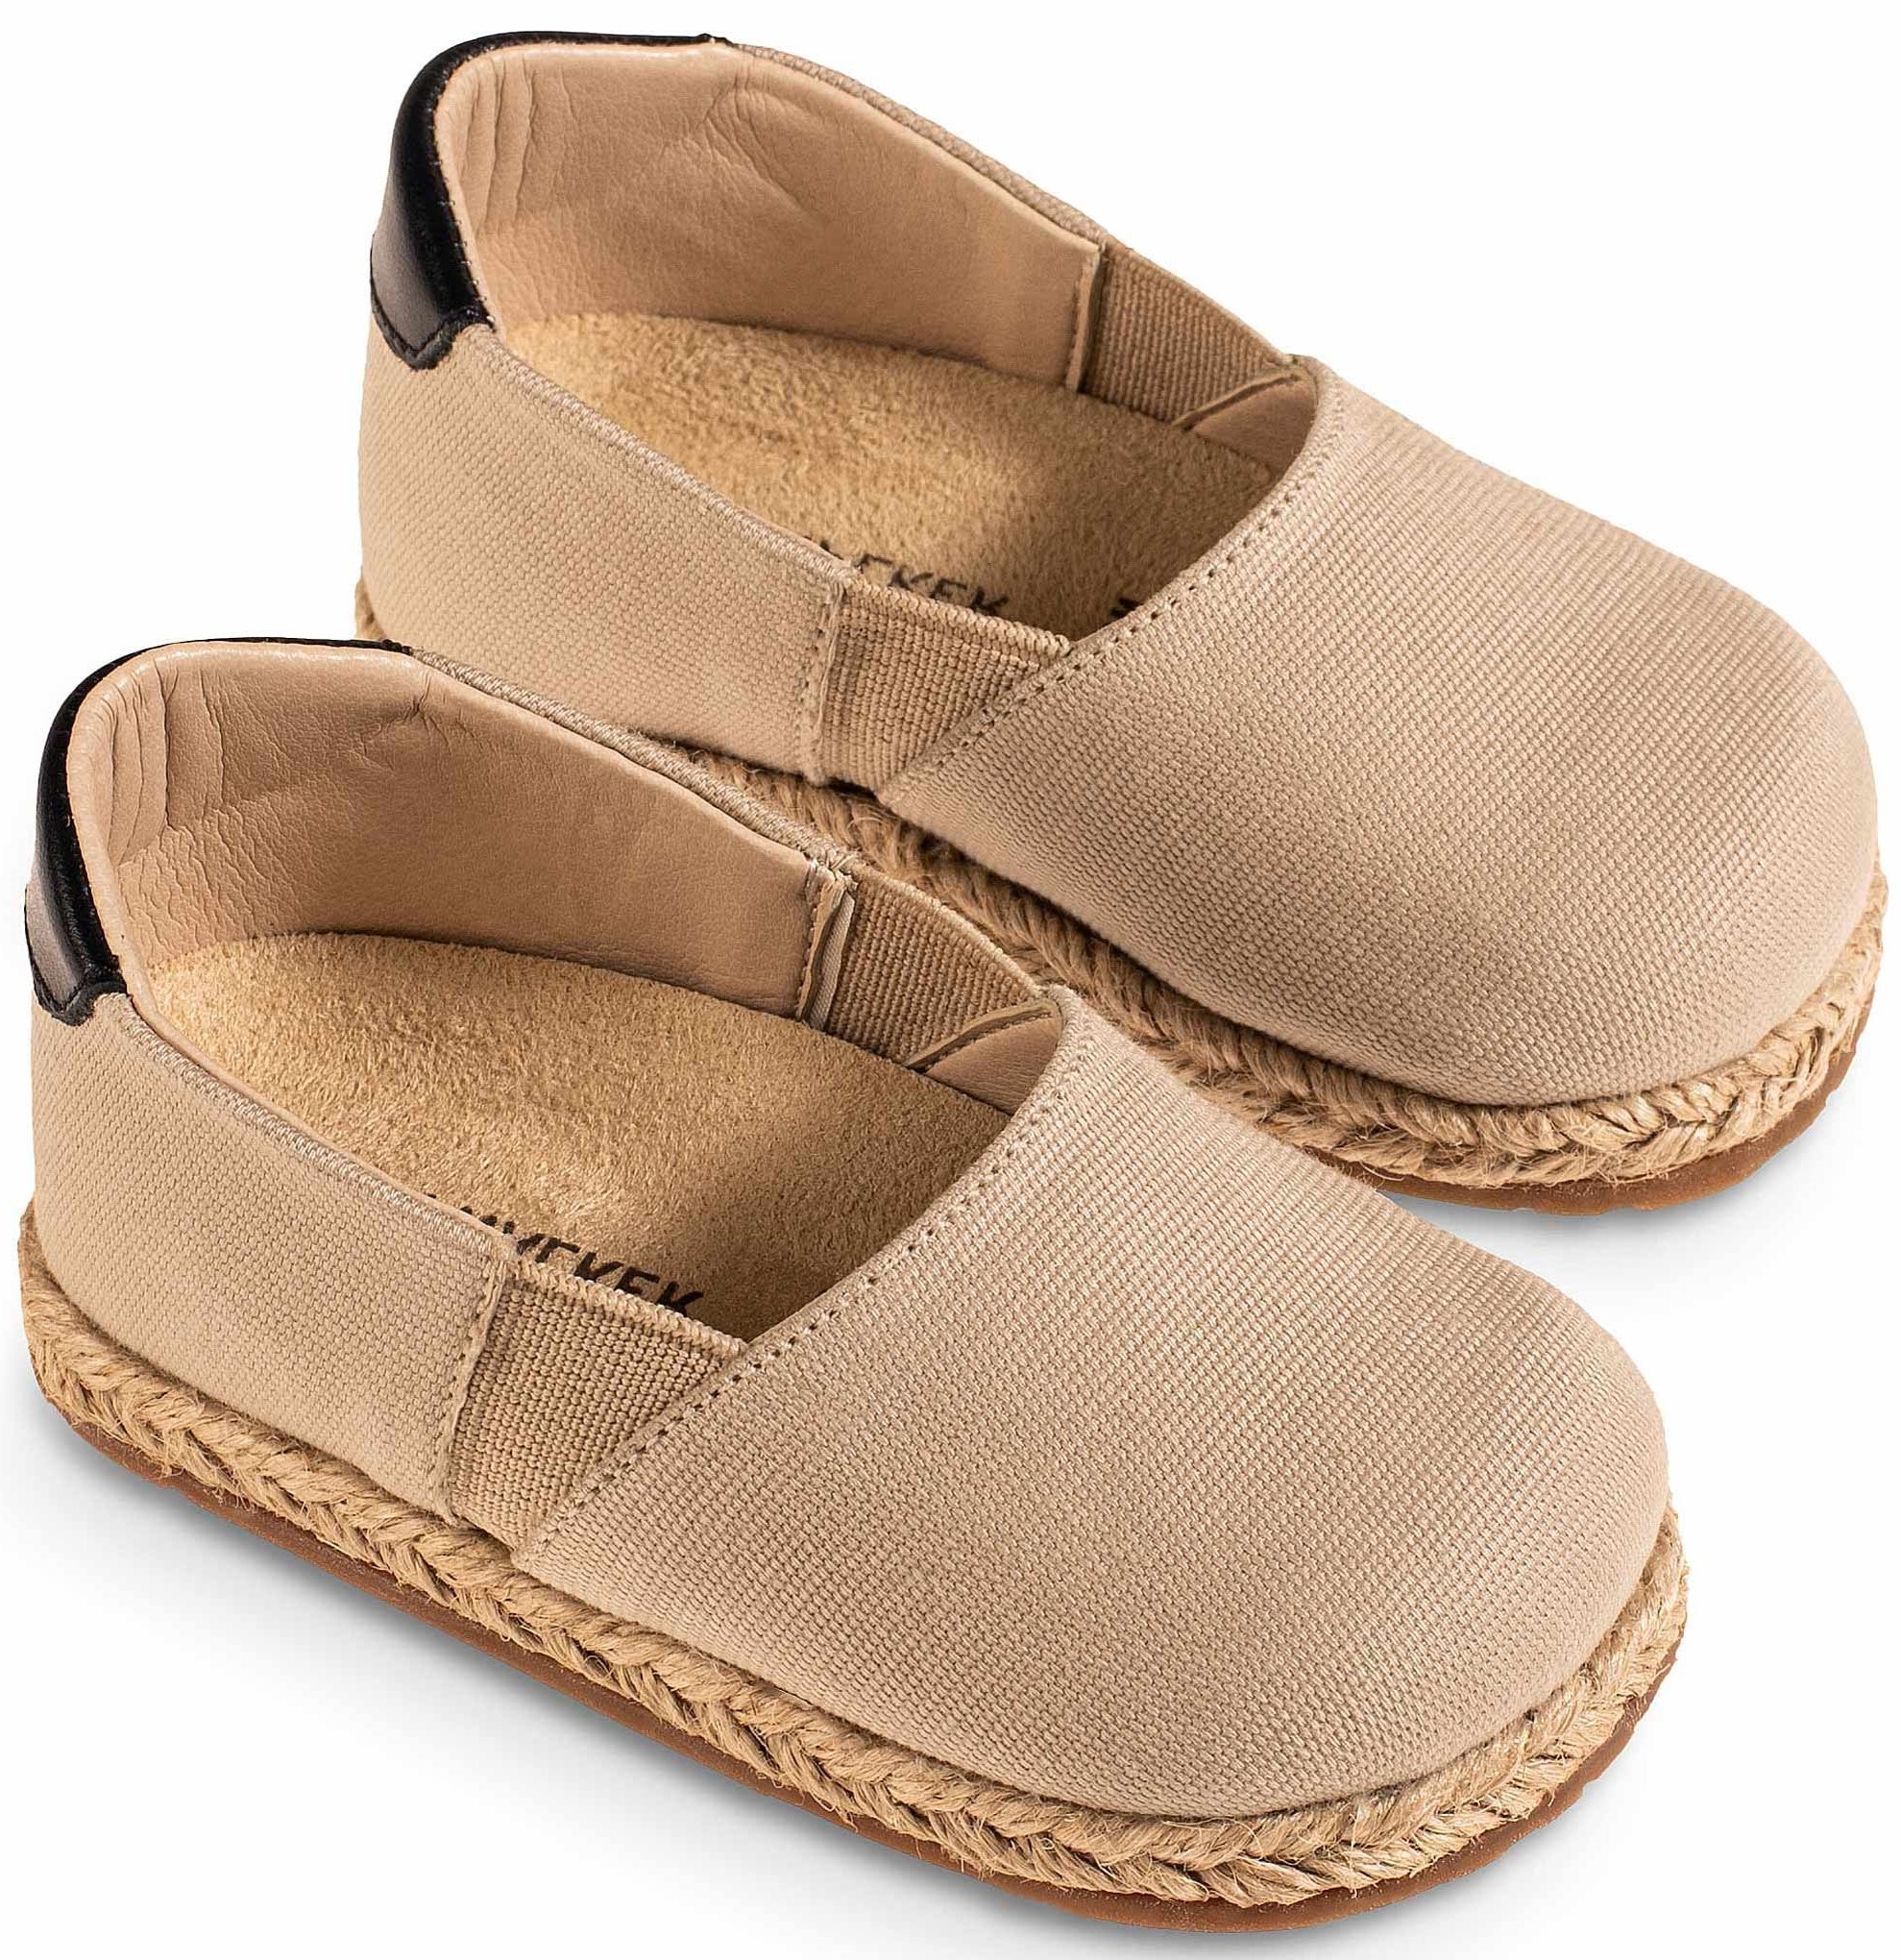 Εσπαντρίγια Μπεζ με λαστιχάκι - Βαπτιστικά παπούτσια για αγόρι